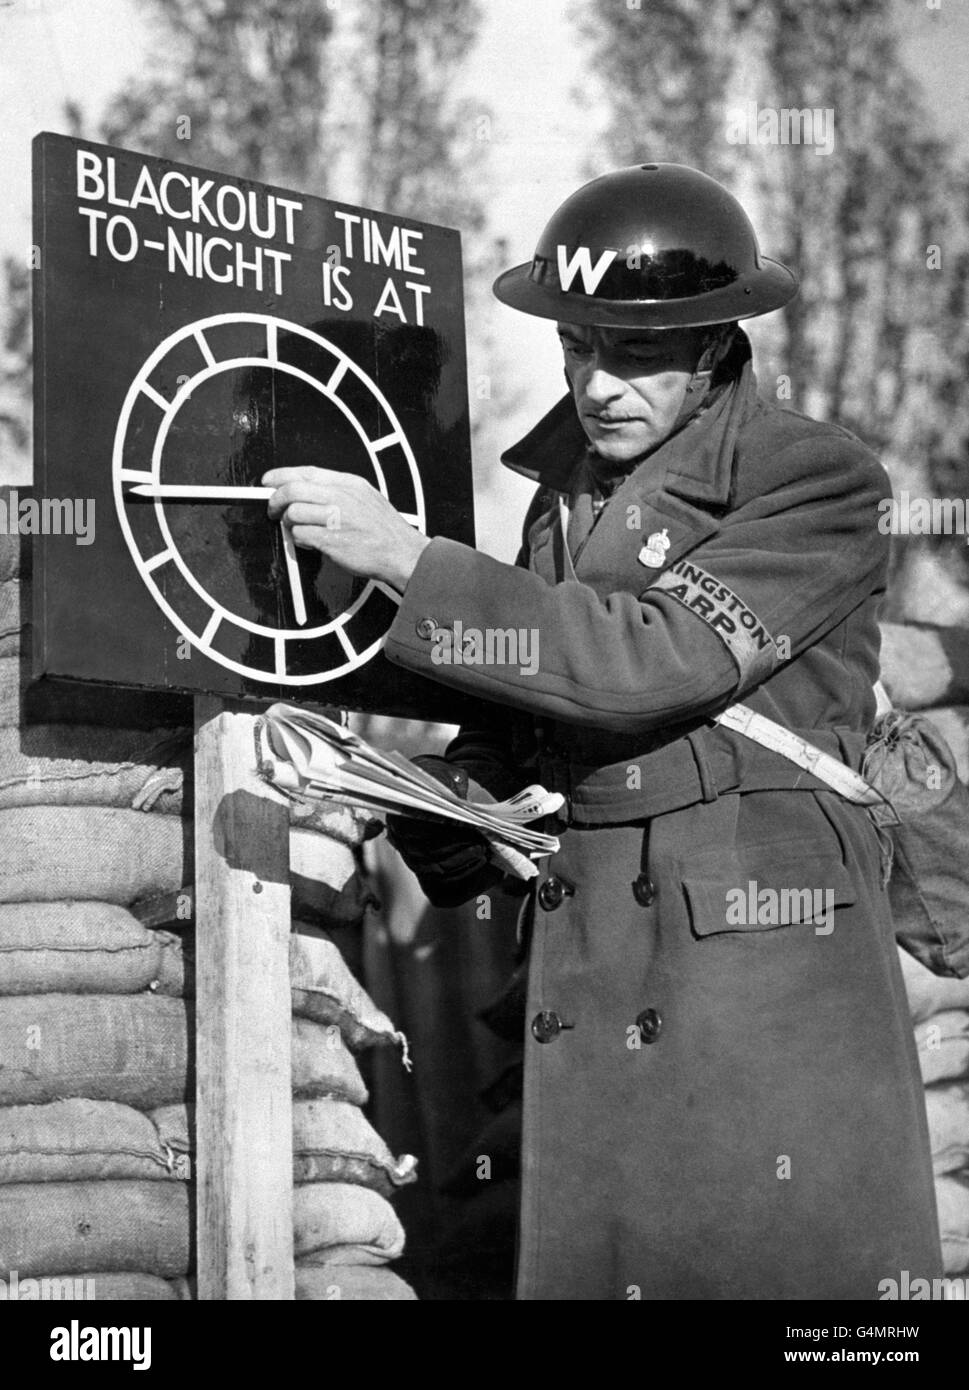 Un garde air-raid fixe un indicateur d'horloge noir sur un poste A.R.P. près de Londres pendant la Seconde Guerre mondiale. Banque D'Images